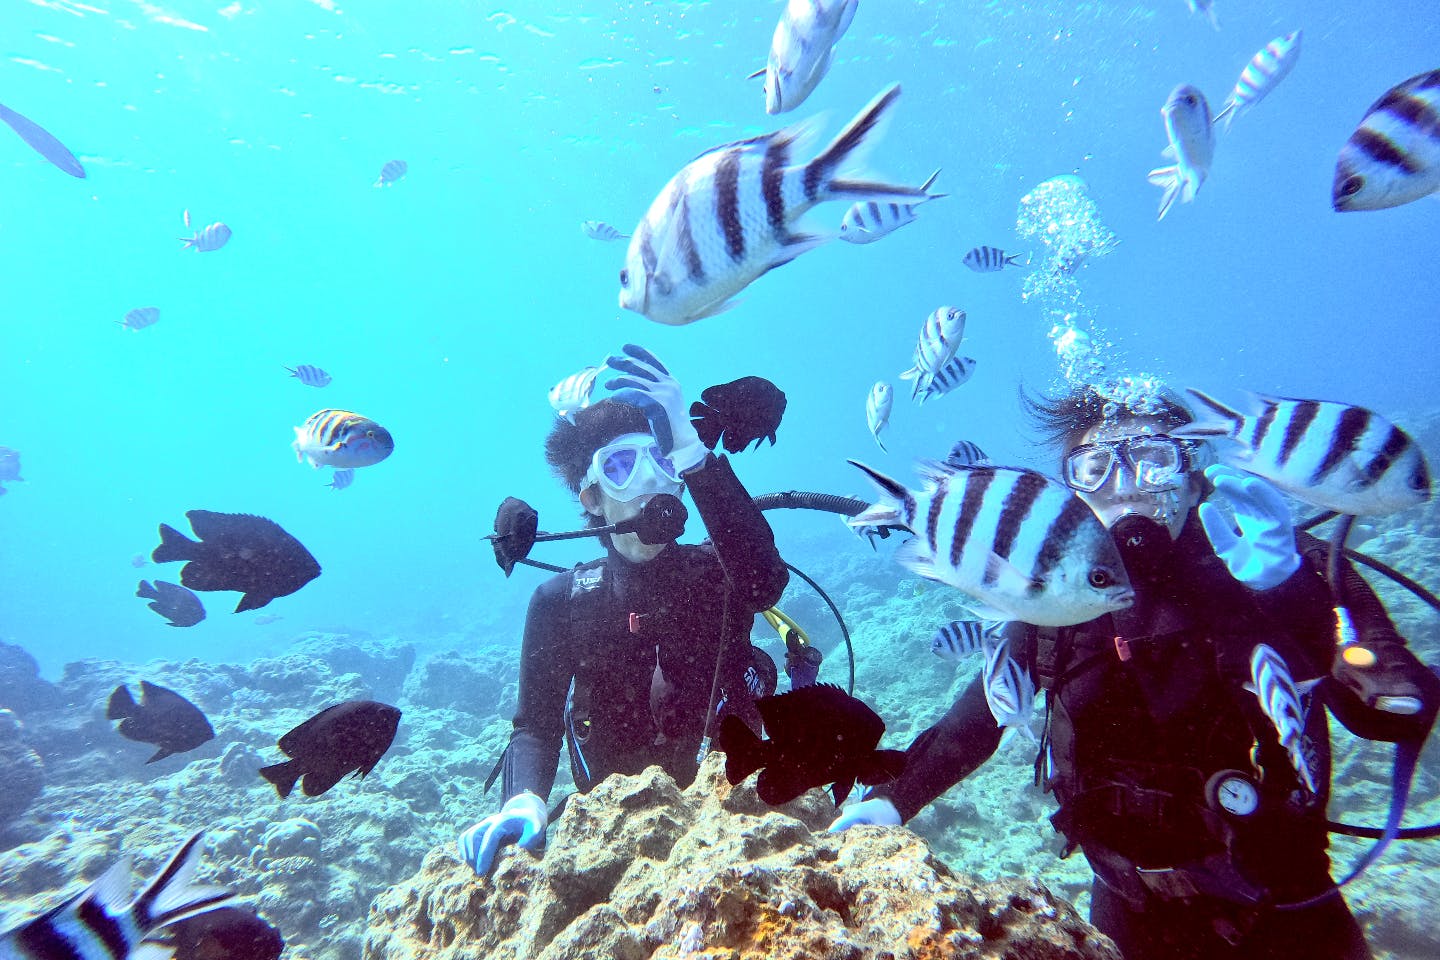 沖縄 北谷 体験ダイビング サンゴと魚たちの楽園へレッツゴー 体験ダイビング アソビュー